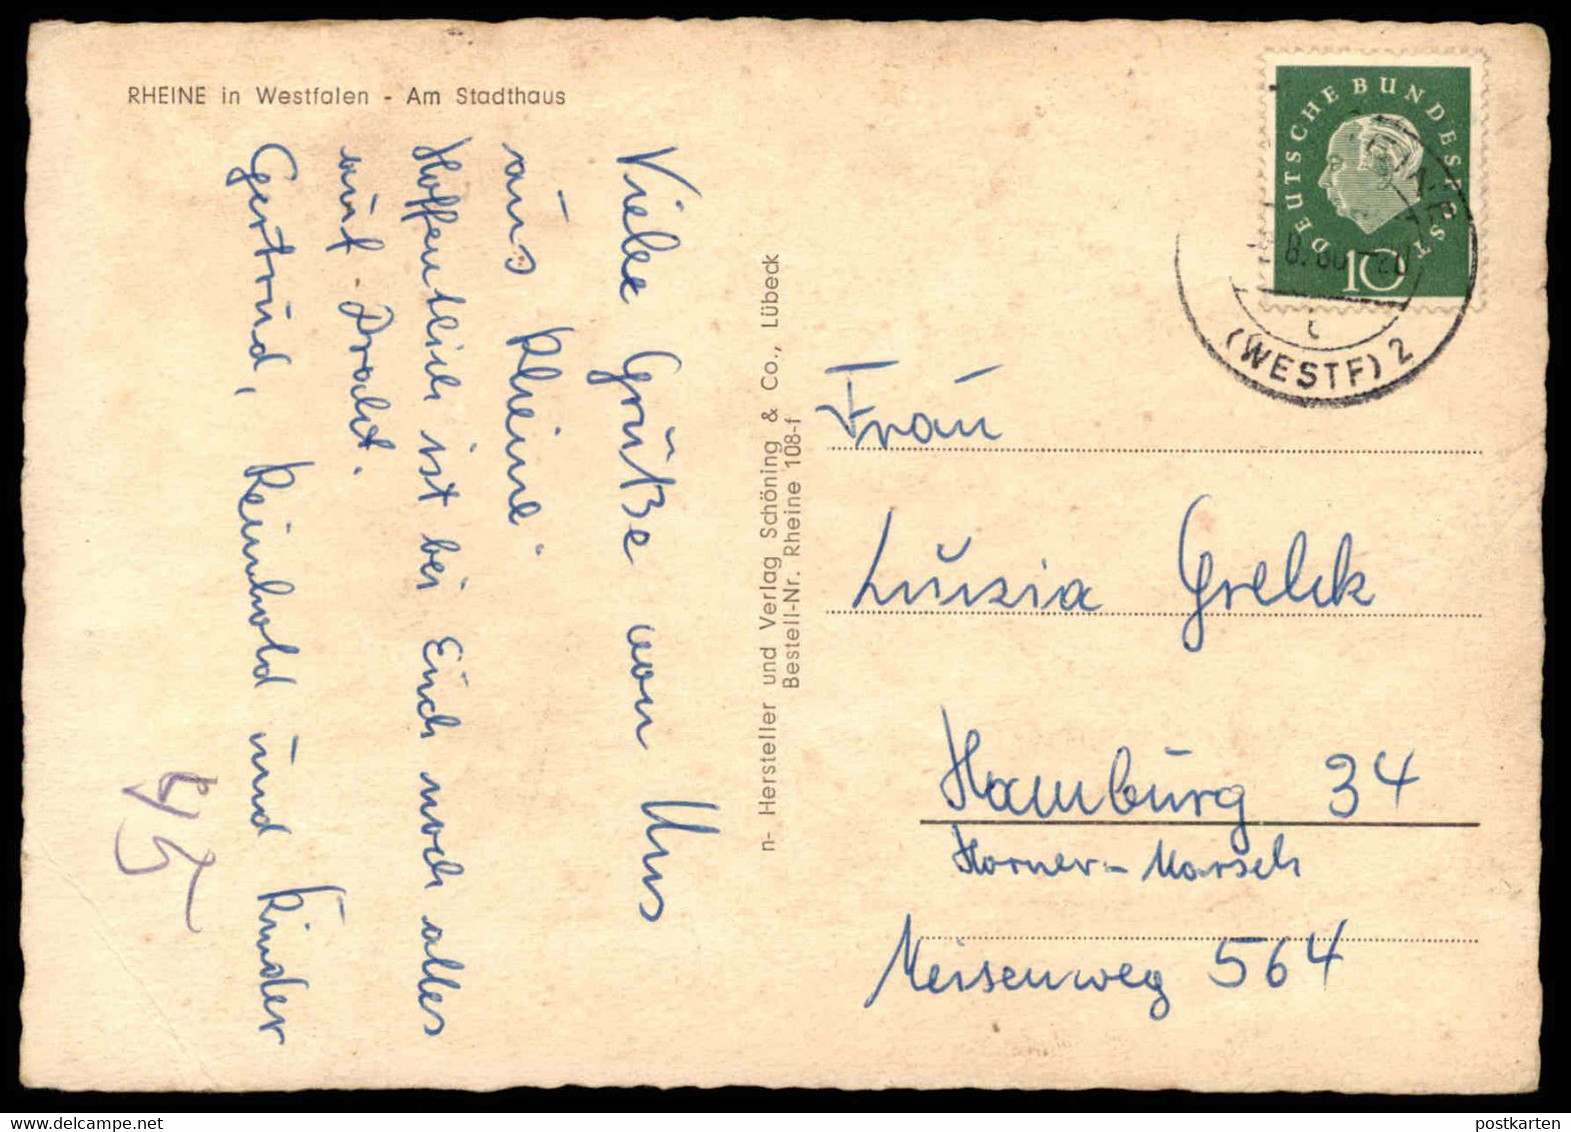 ÄLTERE POSTKARTE RHEINE AM STADTHAUS Hotel 1958 AK Postcard Ansichtskarte Cpa - Rheine